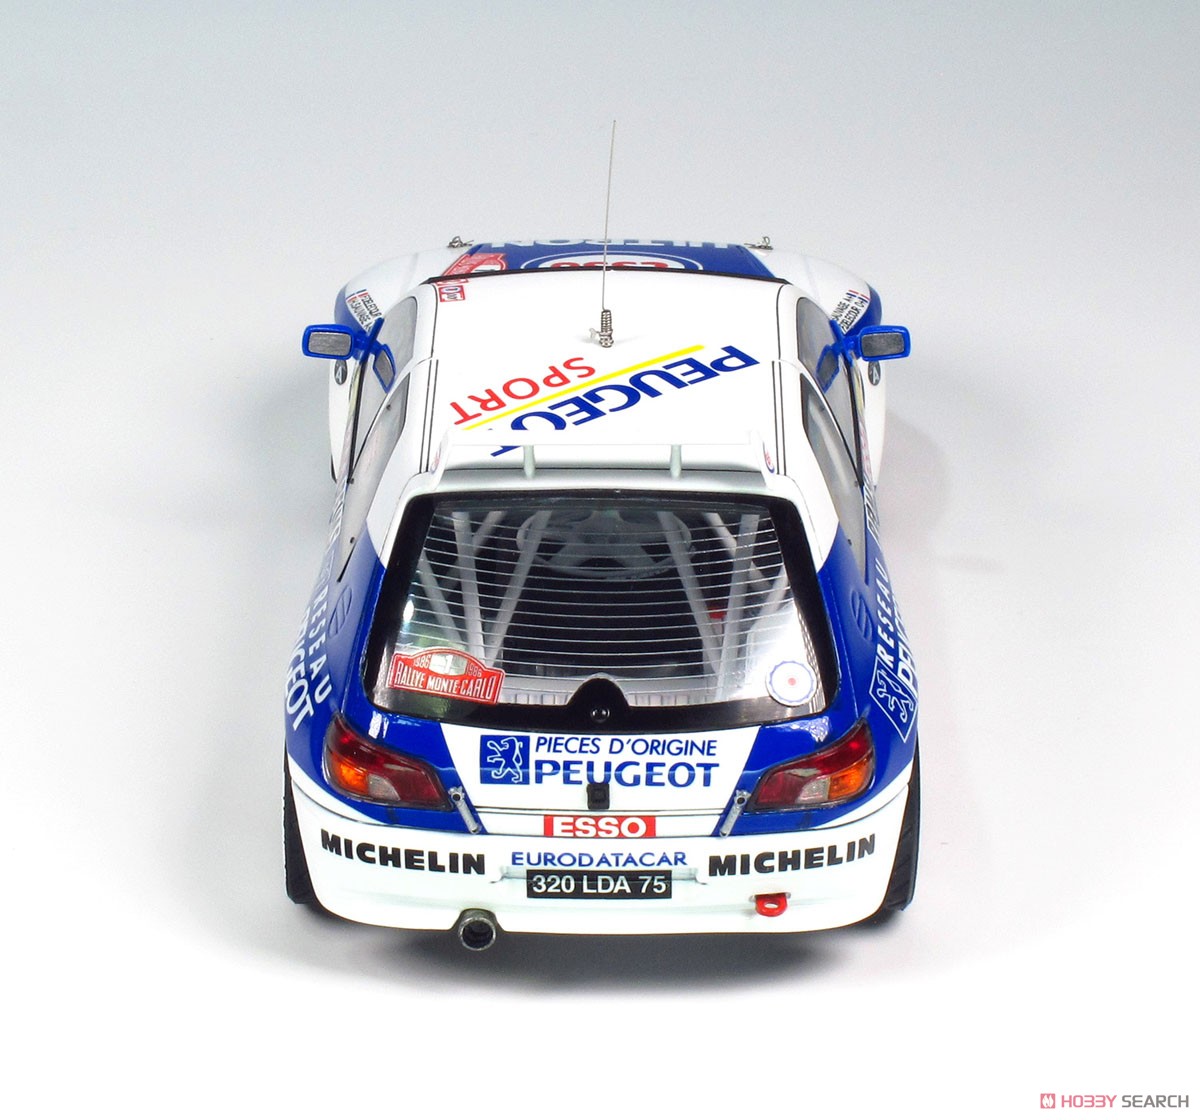 1/24 レーシングシリーズ プジョー306マキシ 1996 モンテカルロラリー (プラモデル) 商品画像4